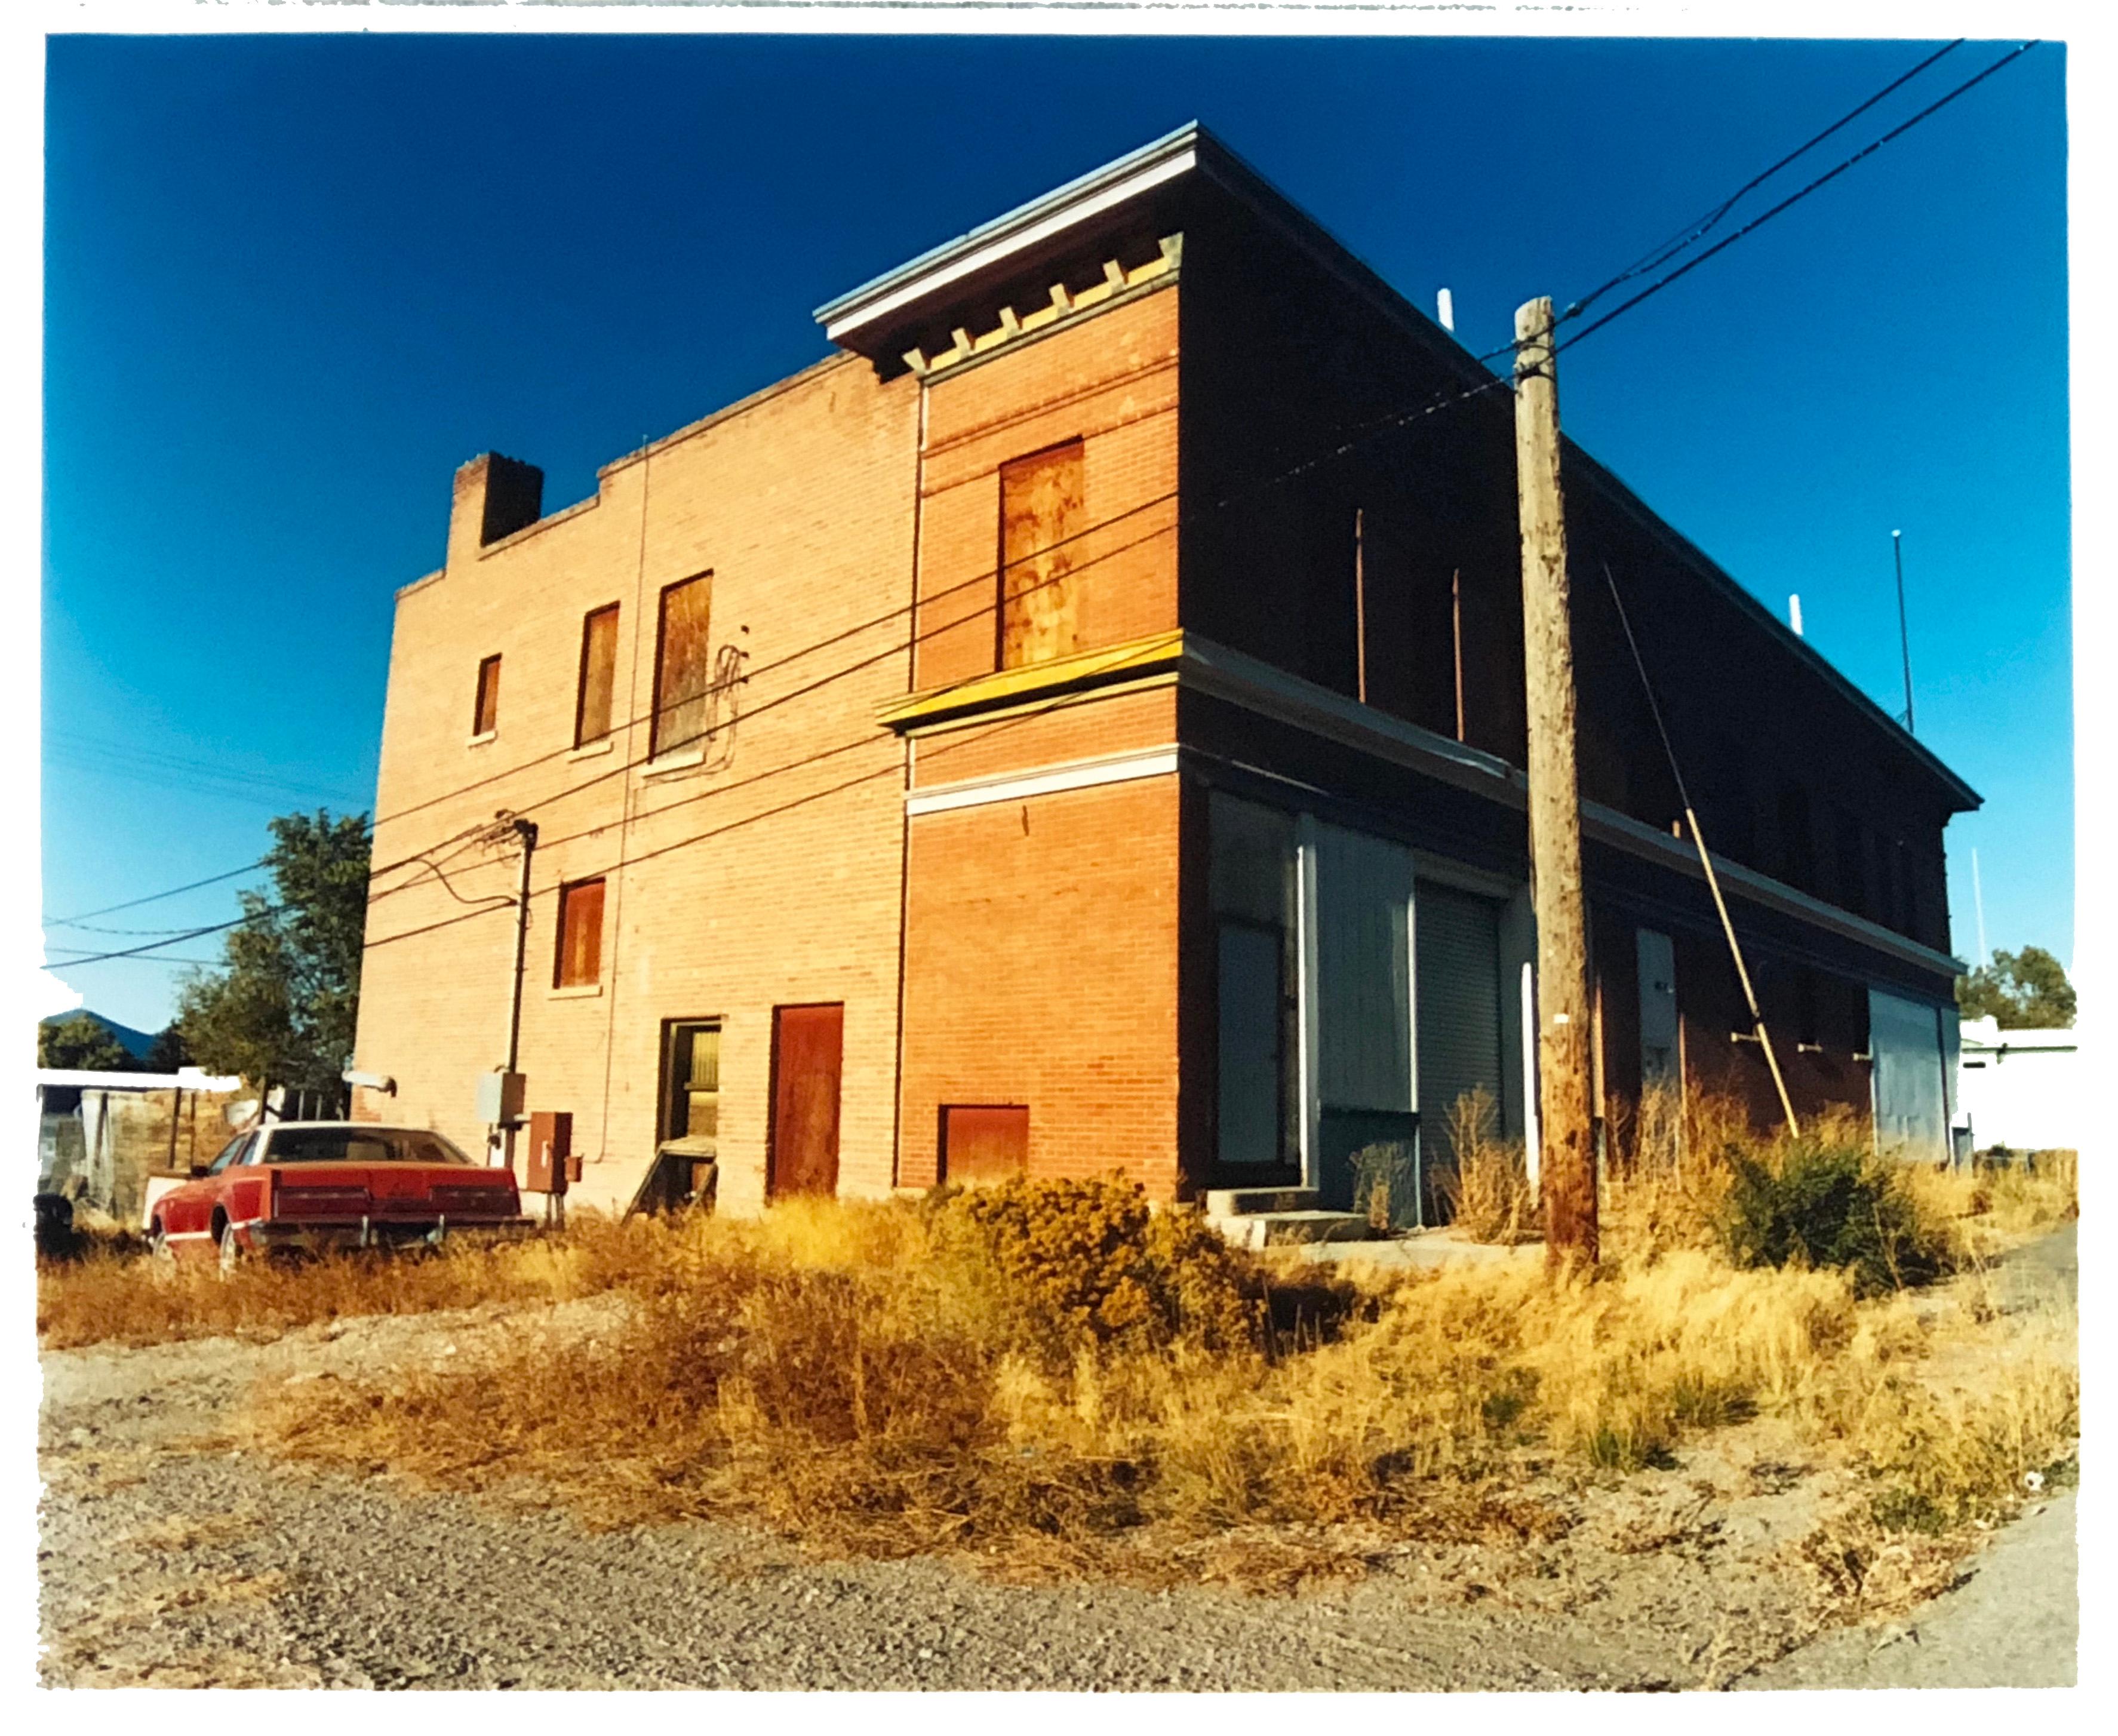 « High Street », Ely, Nevada - D'après le jonc d'or - Photo couleur d'architecture